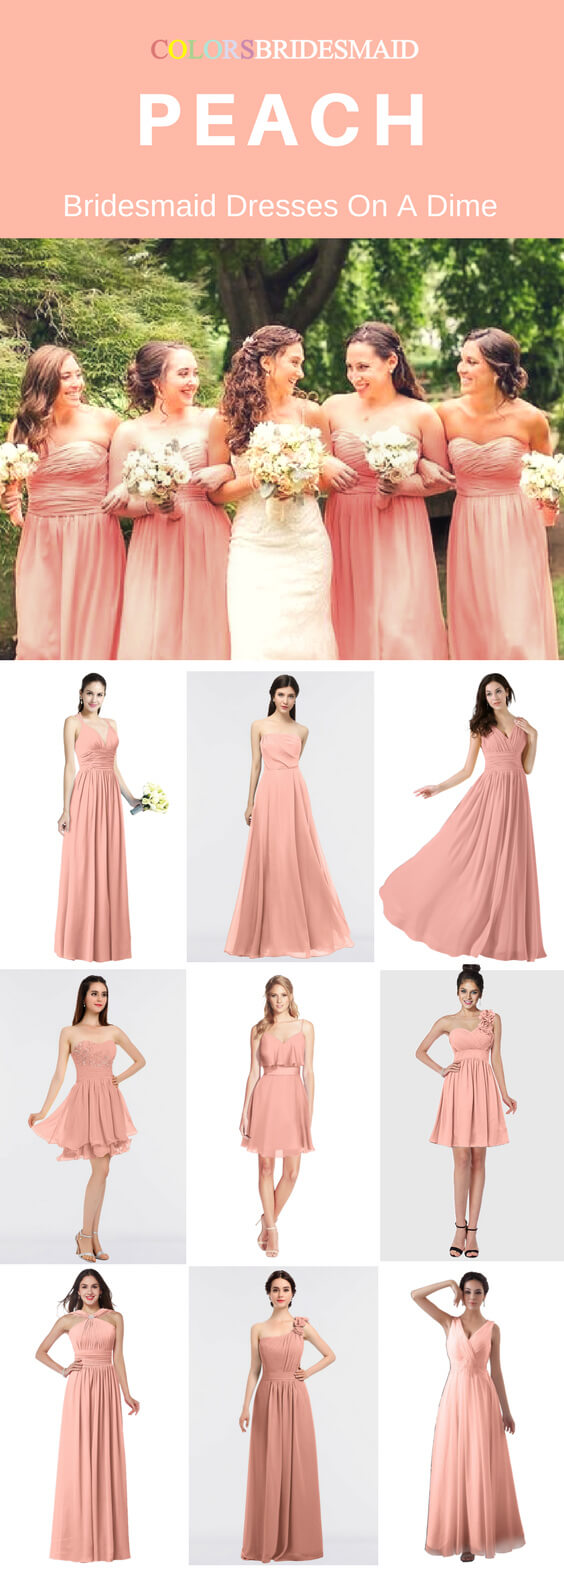 Peach Bridesmaid Dresses On a Dime